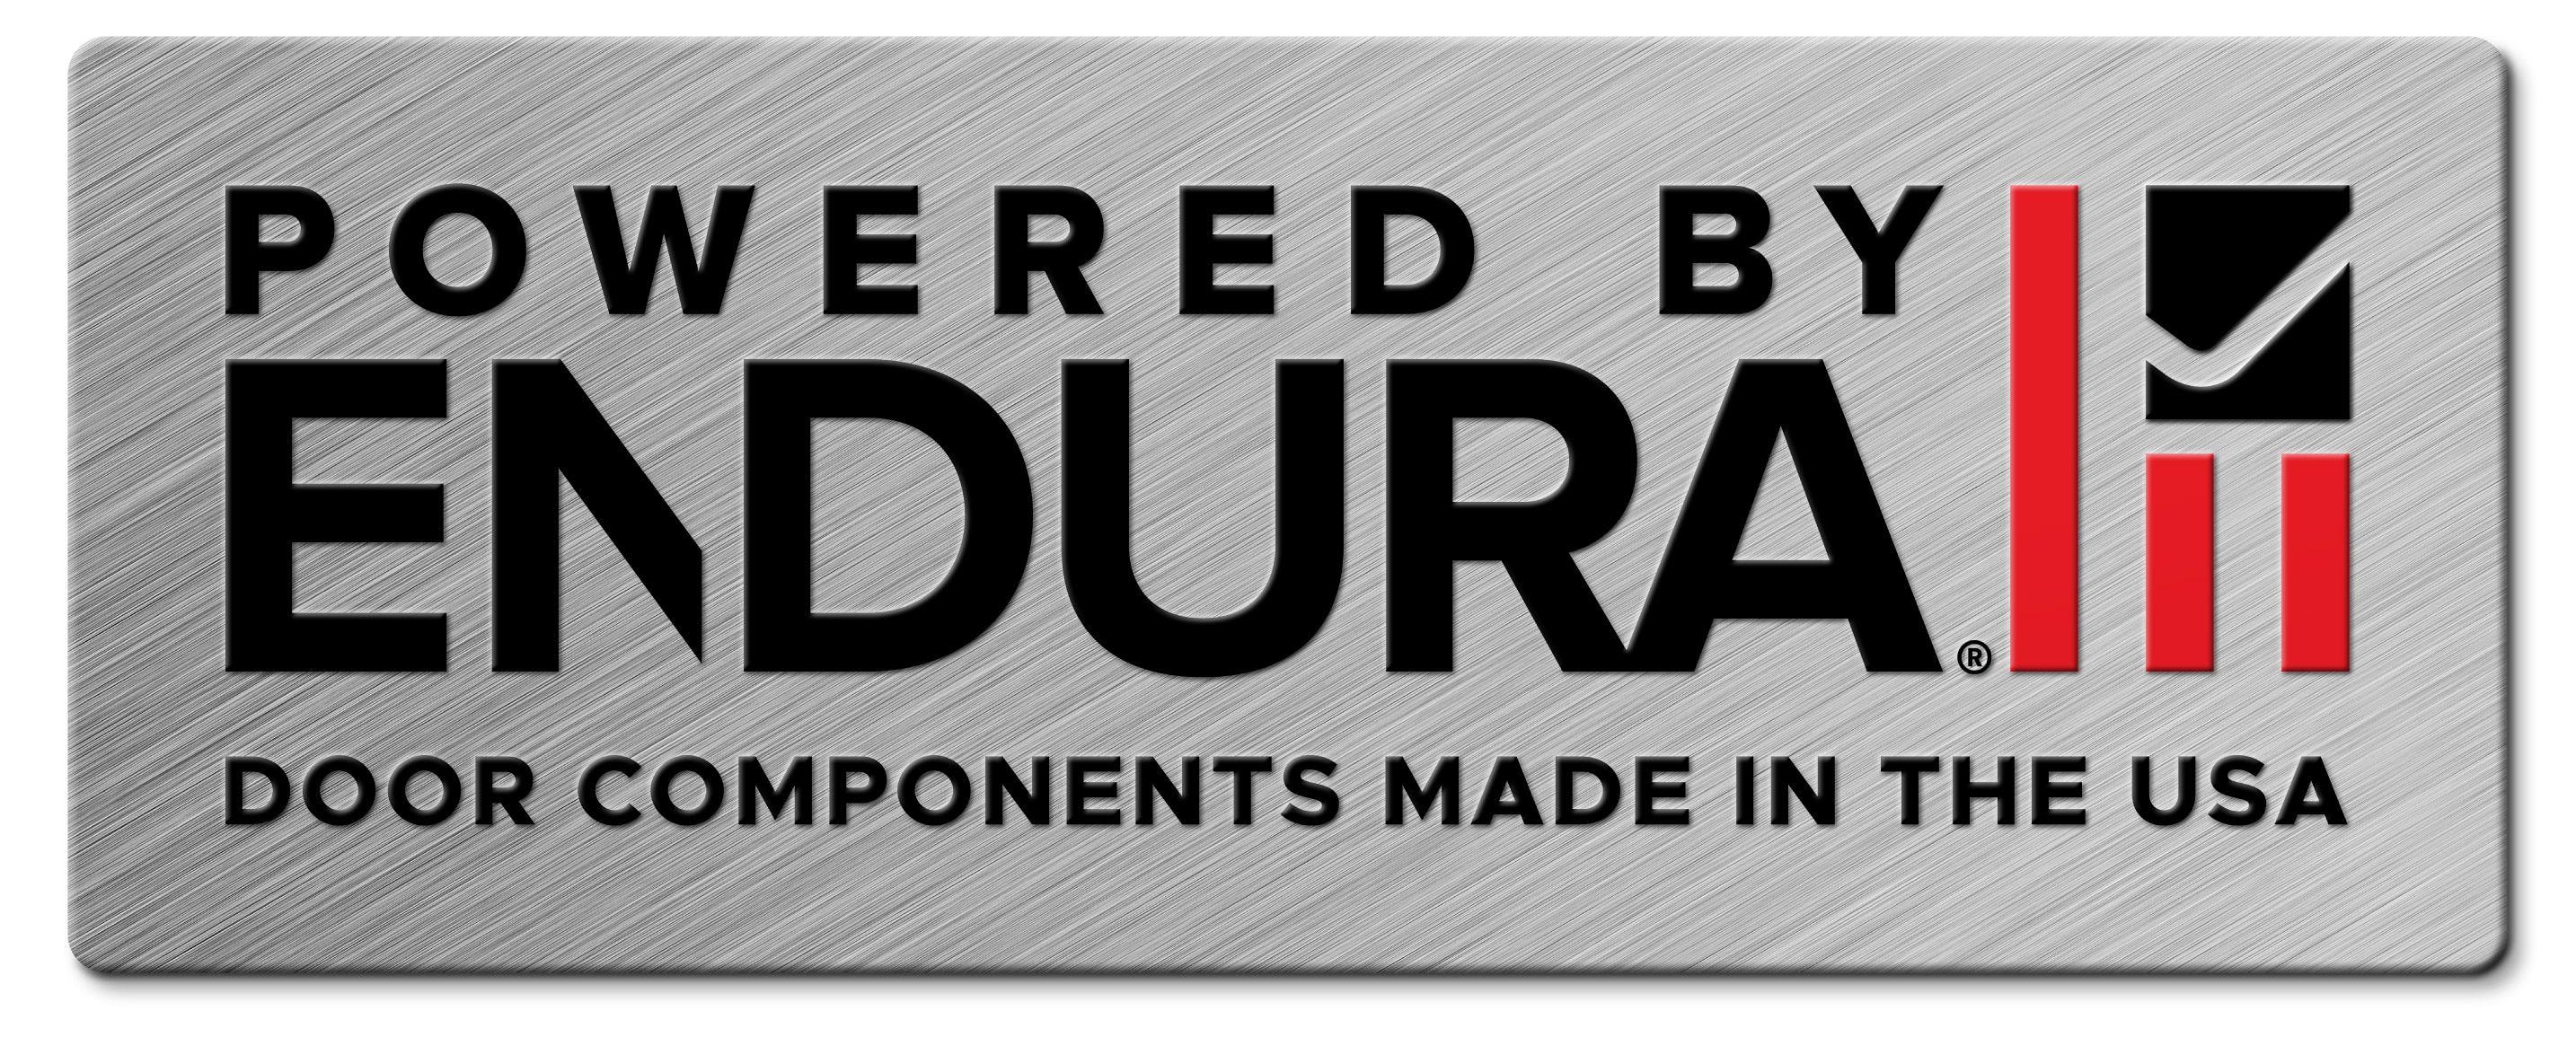 Endura Logo - Endura Door Component Systems. Door Sills. Exterior Door Components